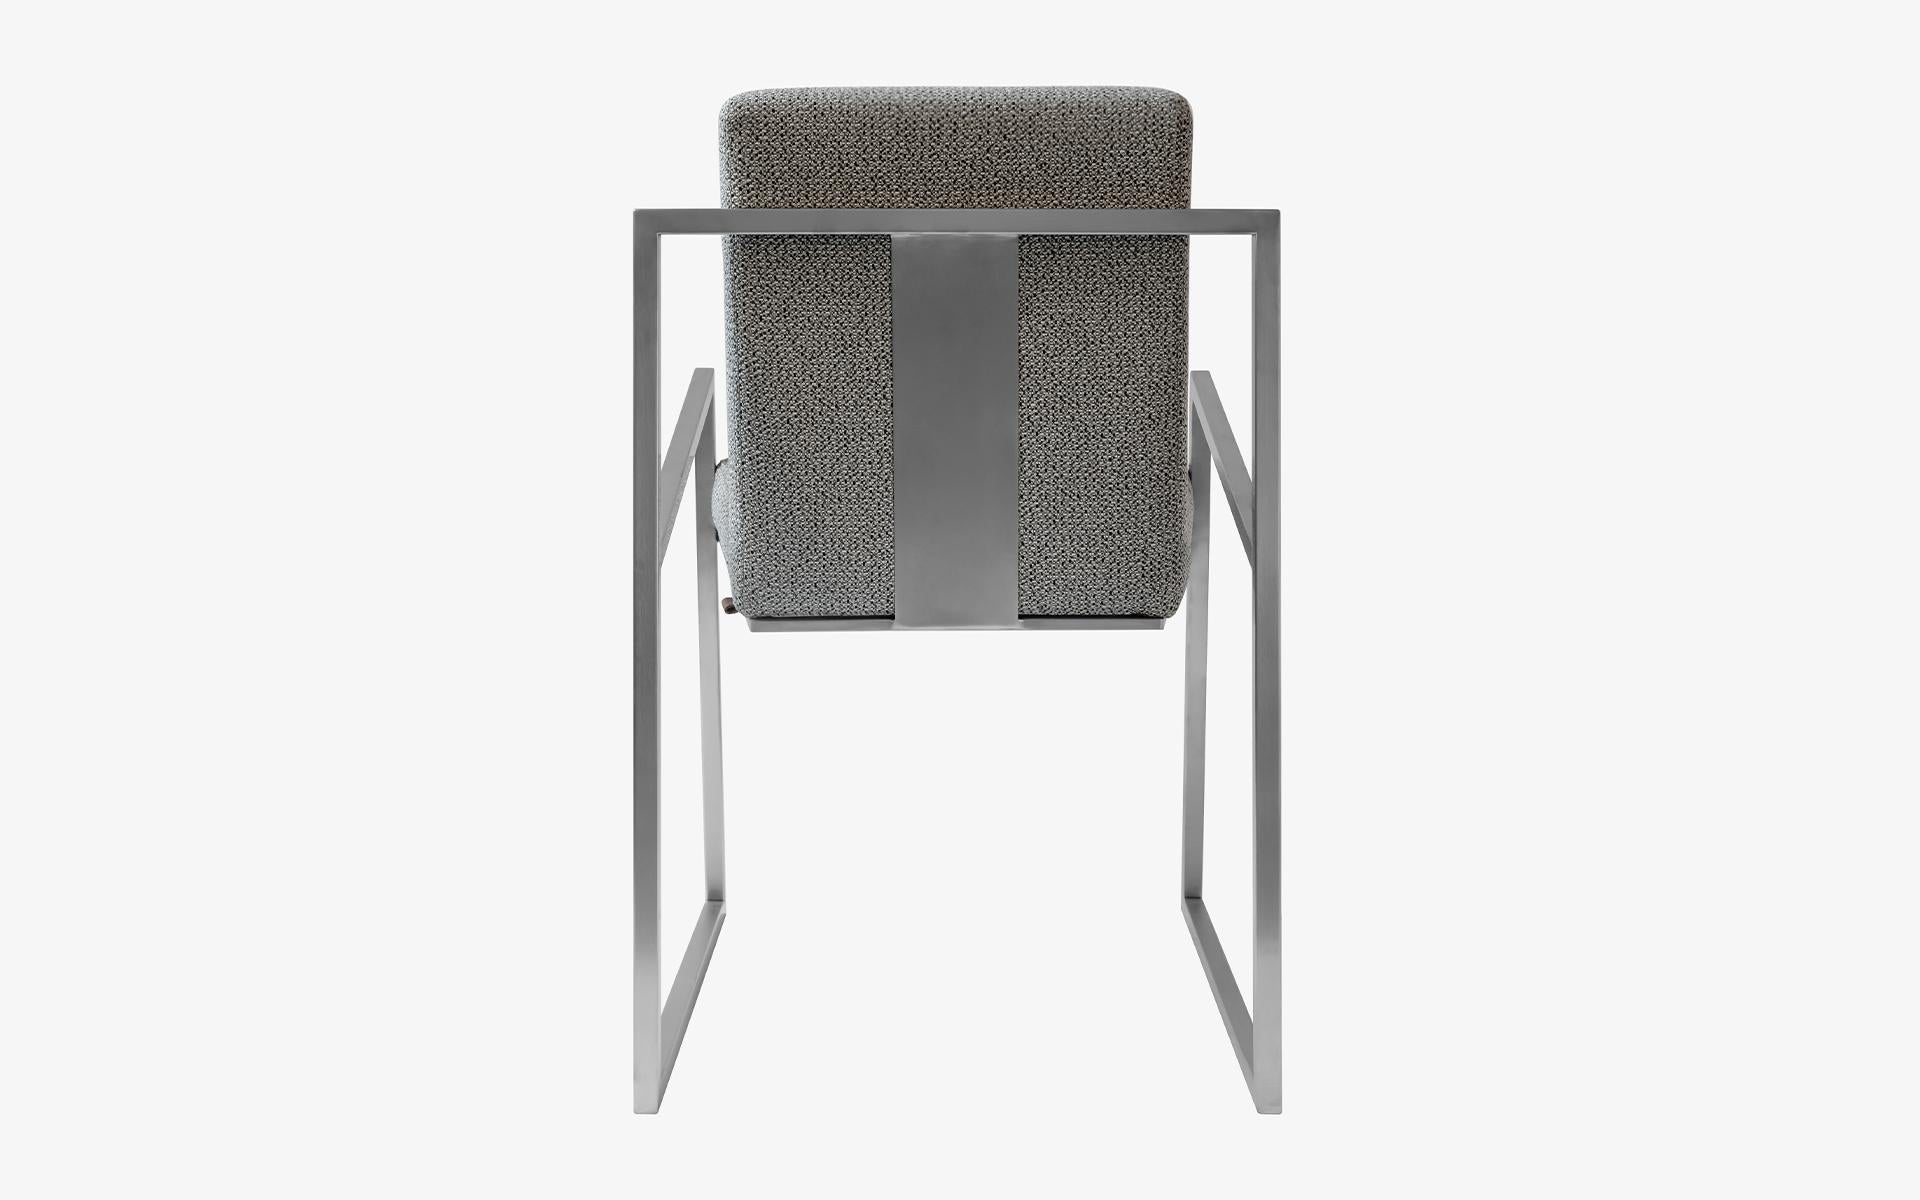 Der berühmte mattverchromte Stuhl bringt bequemen Sitzkomfort und luxuriöses Design in Ihr Wohnzimmer... Es ist auch eine einfache und elegante Option für Ihr Esszimmer.

Der FAMED-Stuhl, bei dem das bequeme Sitzen im Vordergrund steht, fasziniert